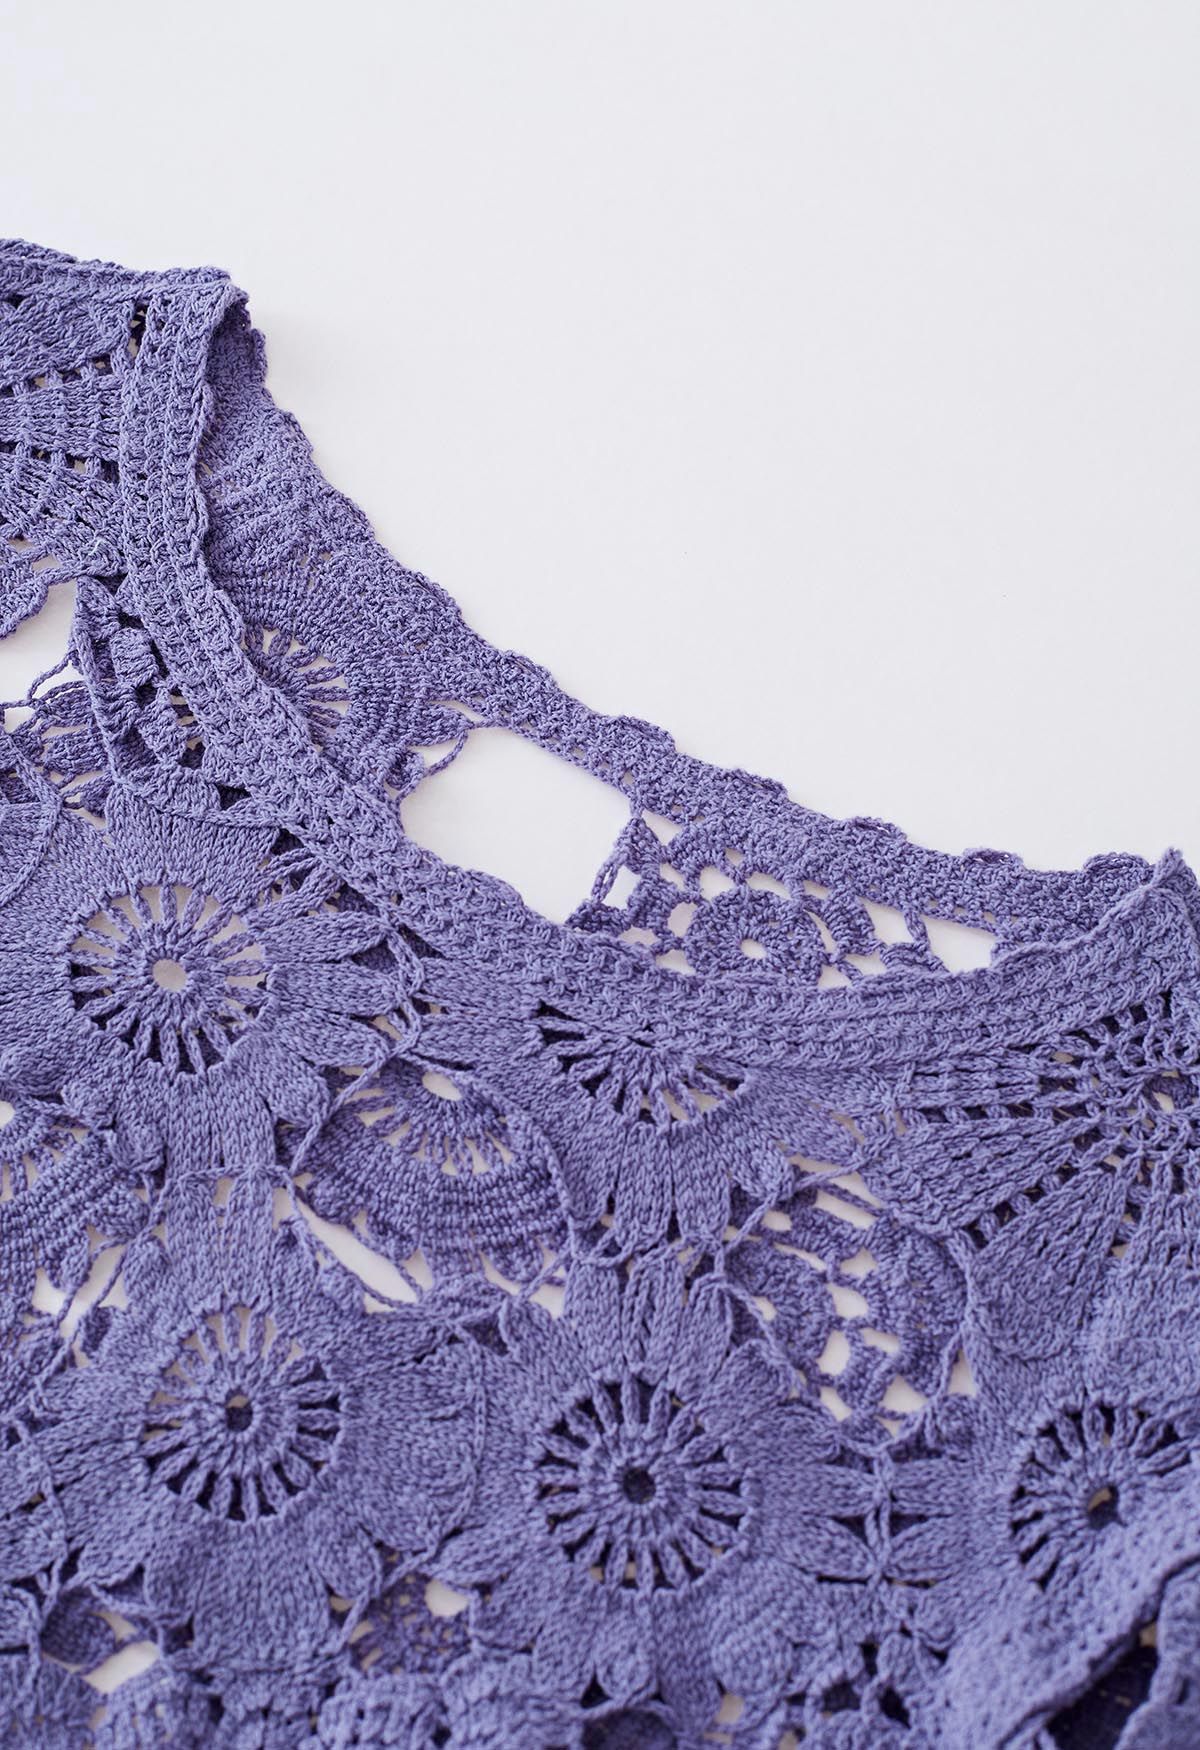 Flower Land Crochet Crop Top in Purple